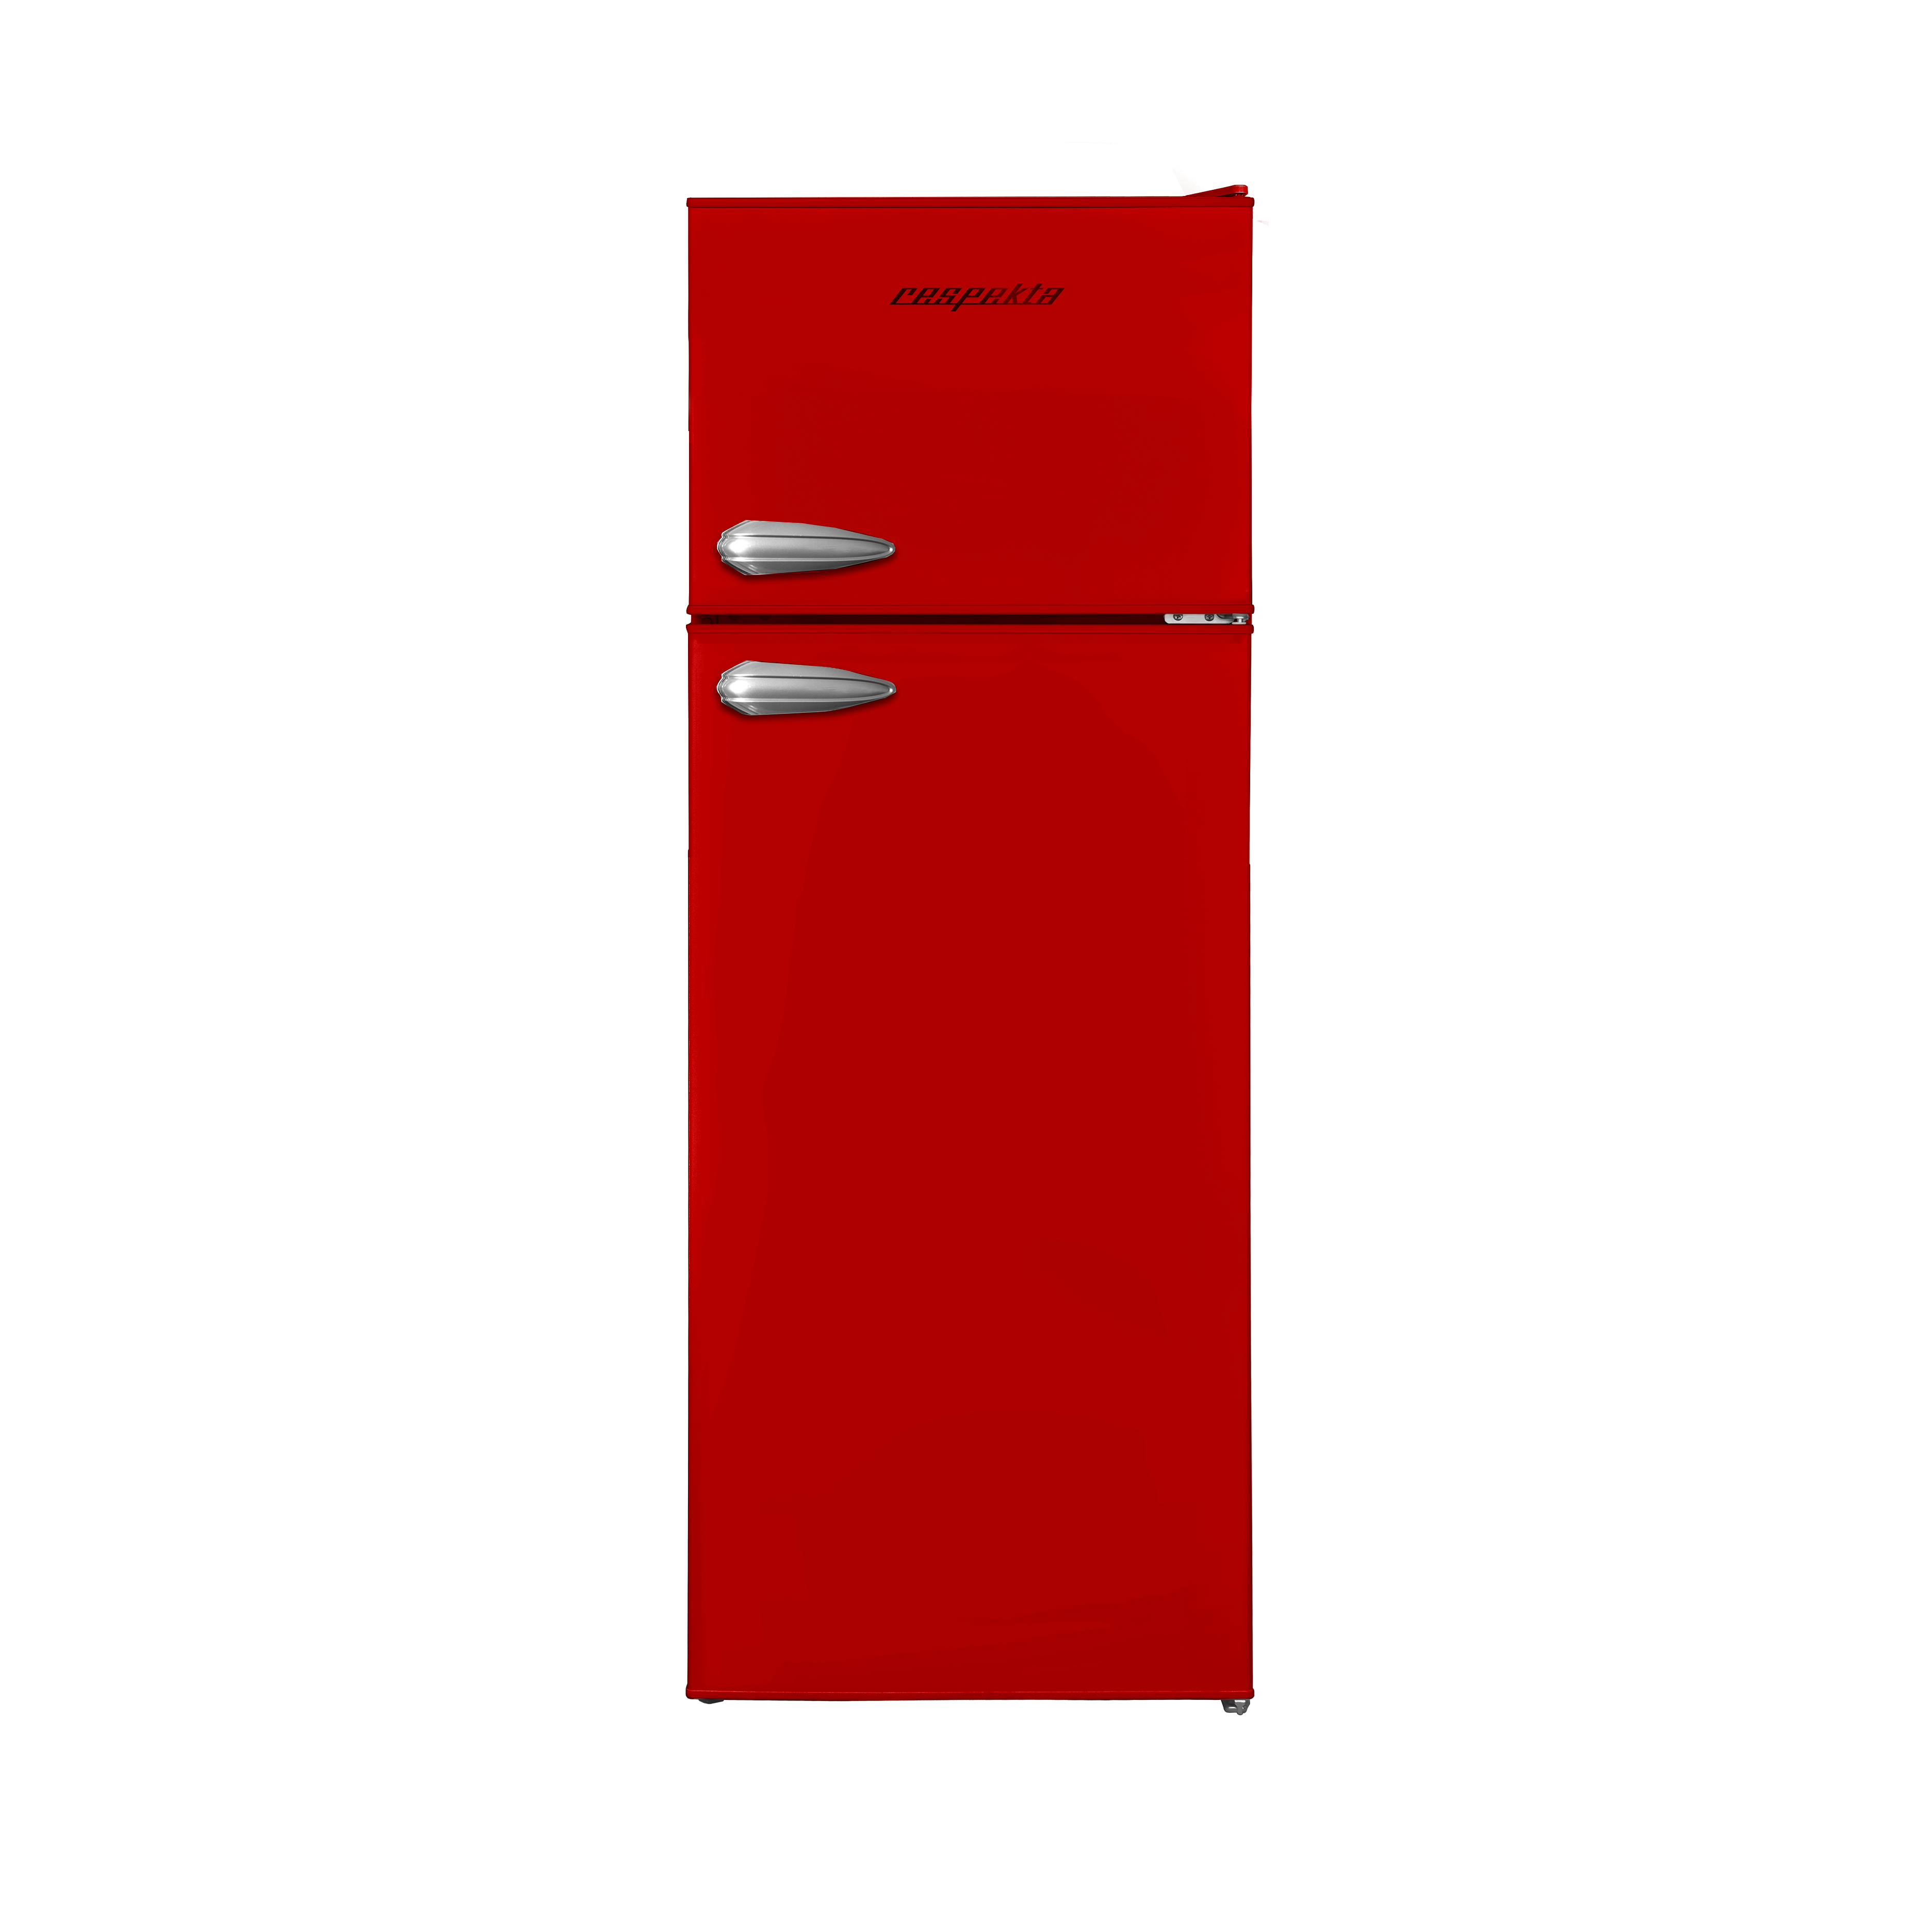 (E, RESPEKTA cm KS144VR Rot) Kühl-Gefrierkombination hoch, 144